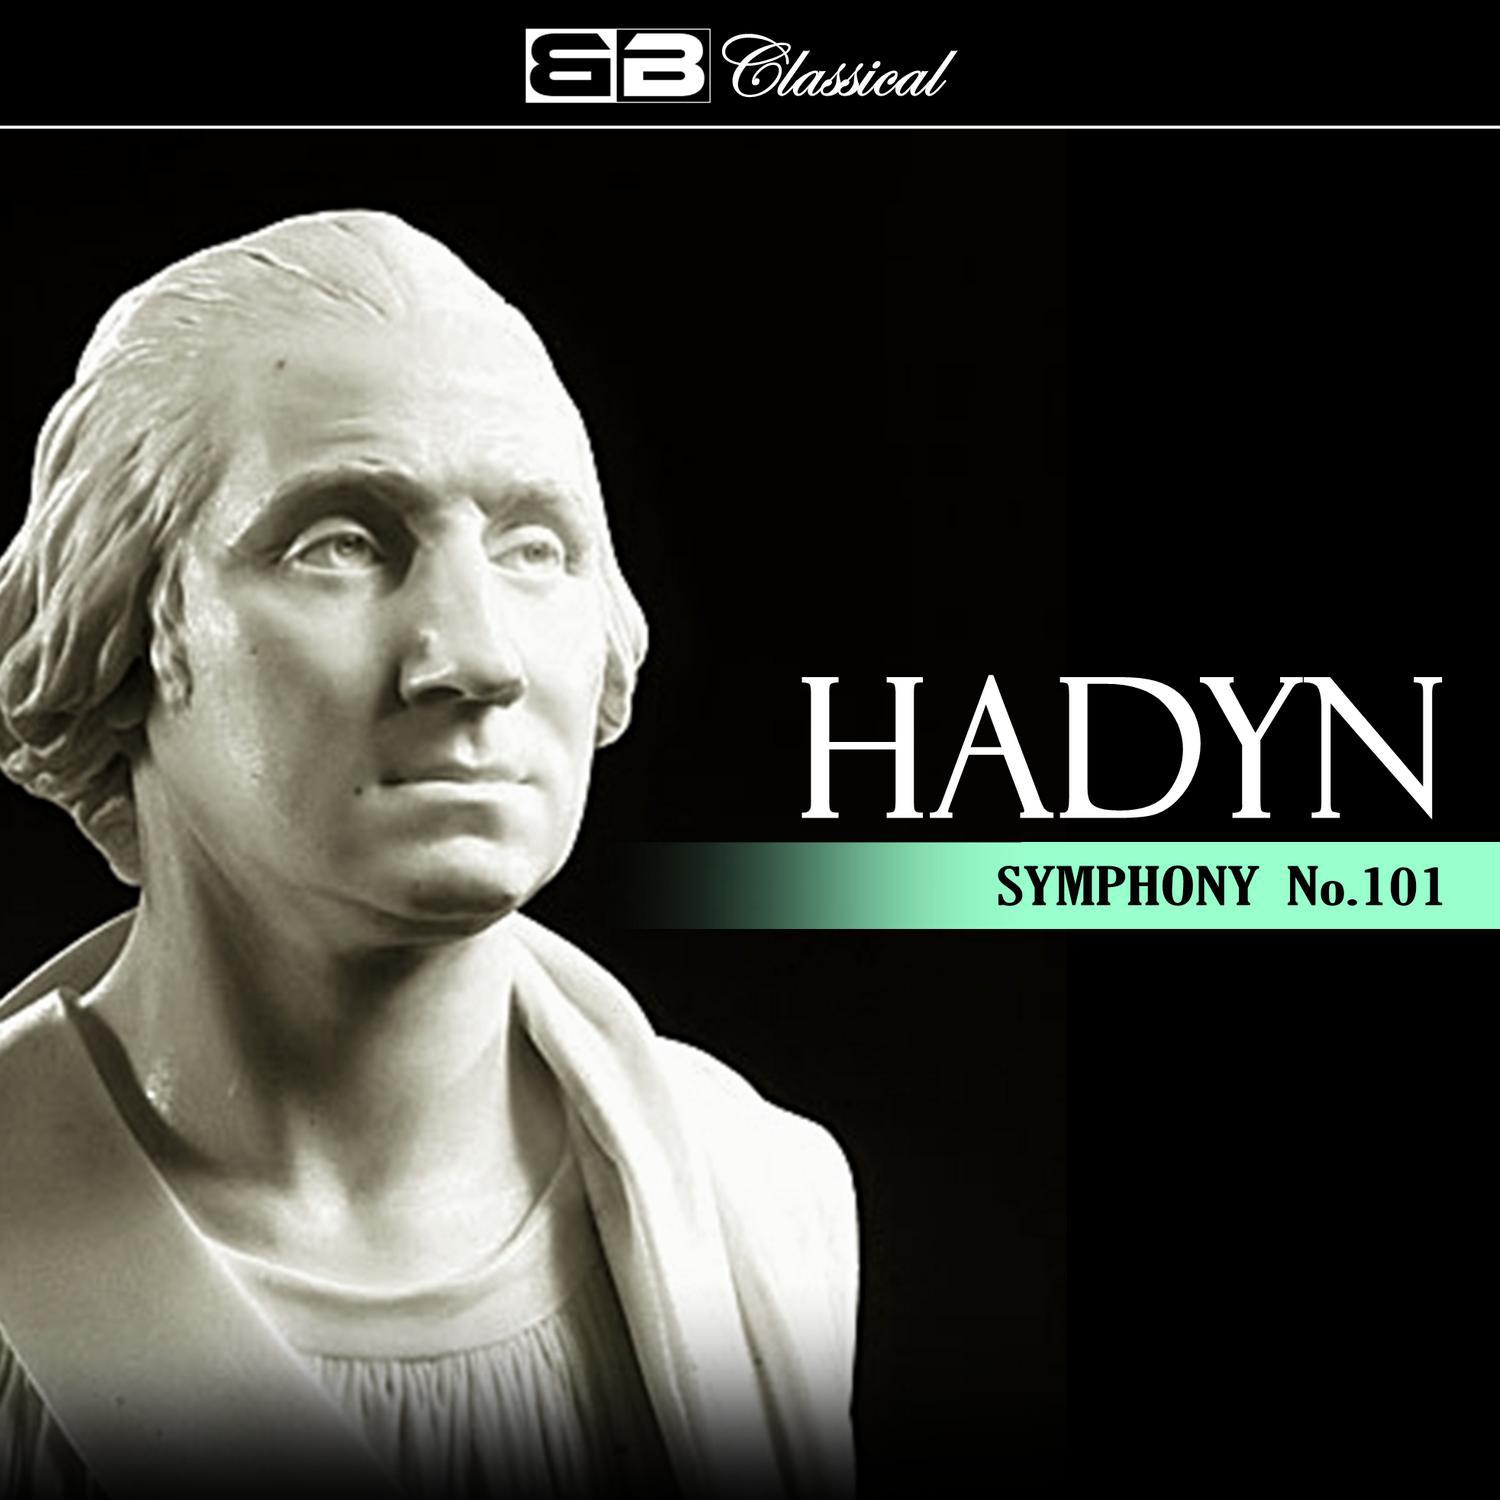 Hadyn Symphony No. 101